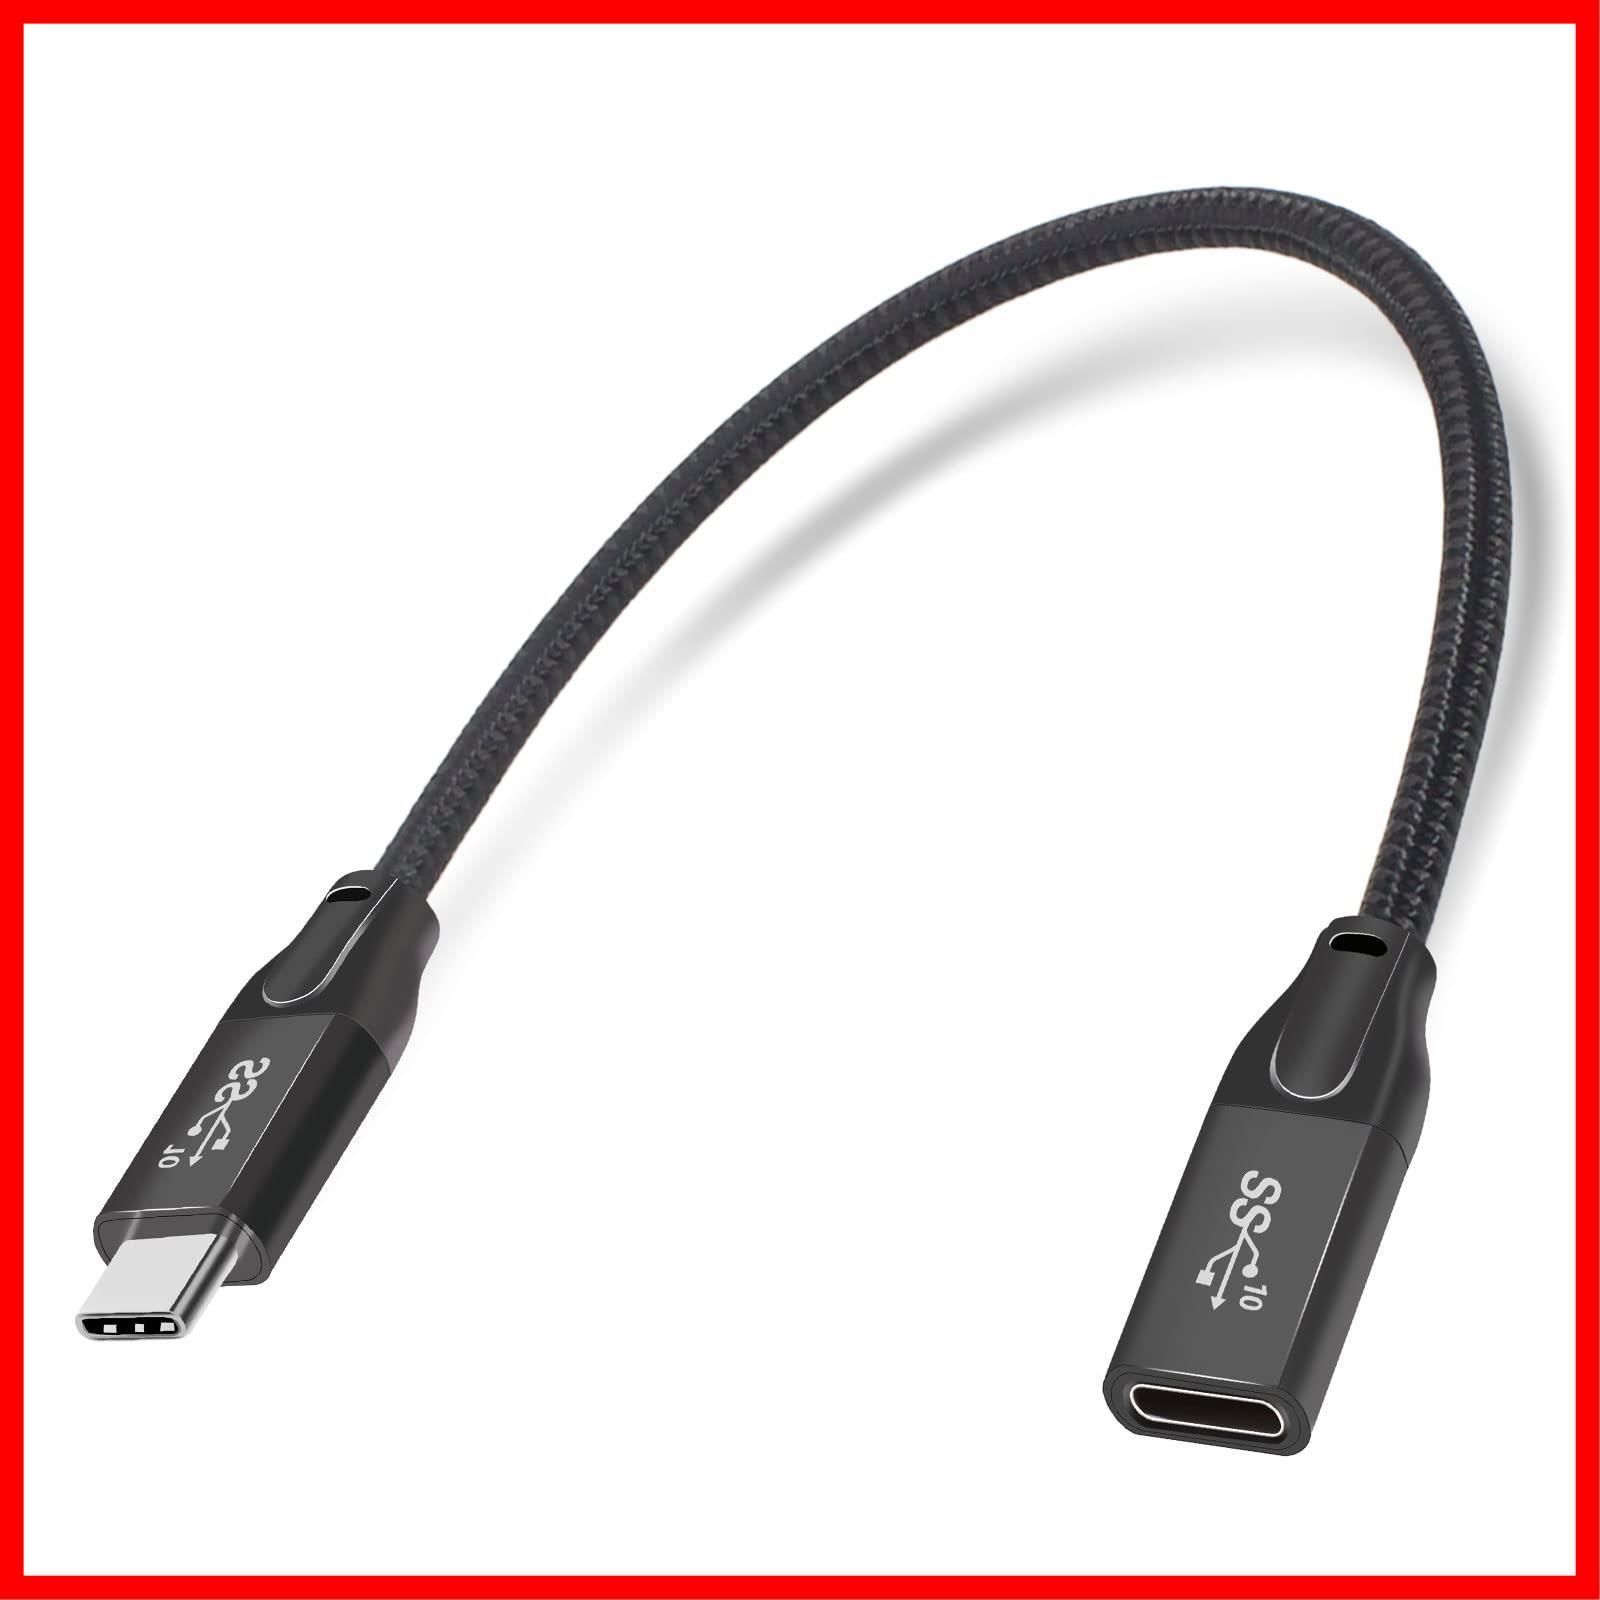 セール中】Mauknci USB 3.1 Type C 延長ケーブル Gen2 10Gbps 5A急速充電 0.3m USB C オス to USB  C メス 延長コード ビデオ/音声/データ転送に対応 タイガーショップ メルカリ